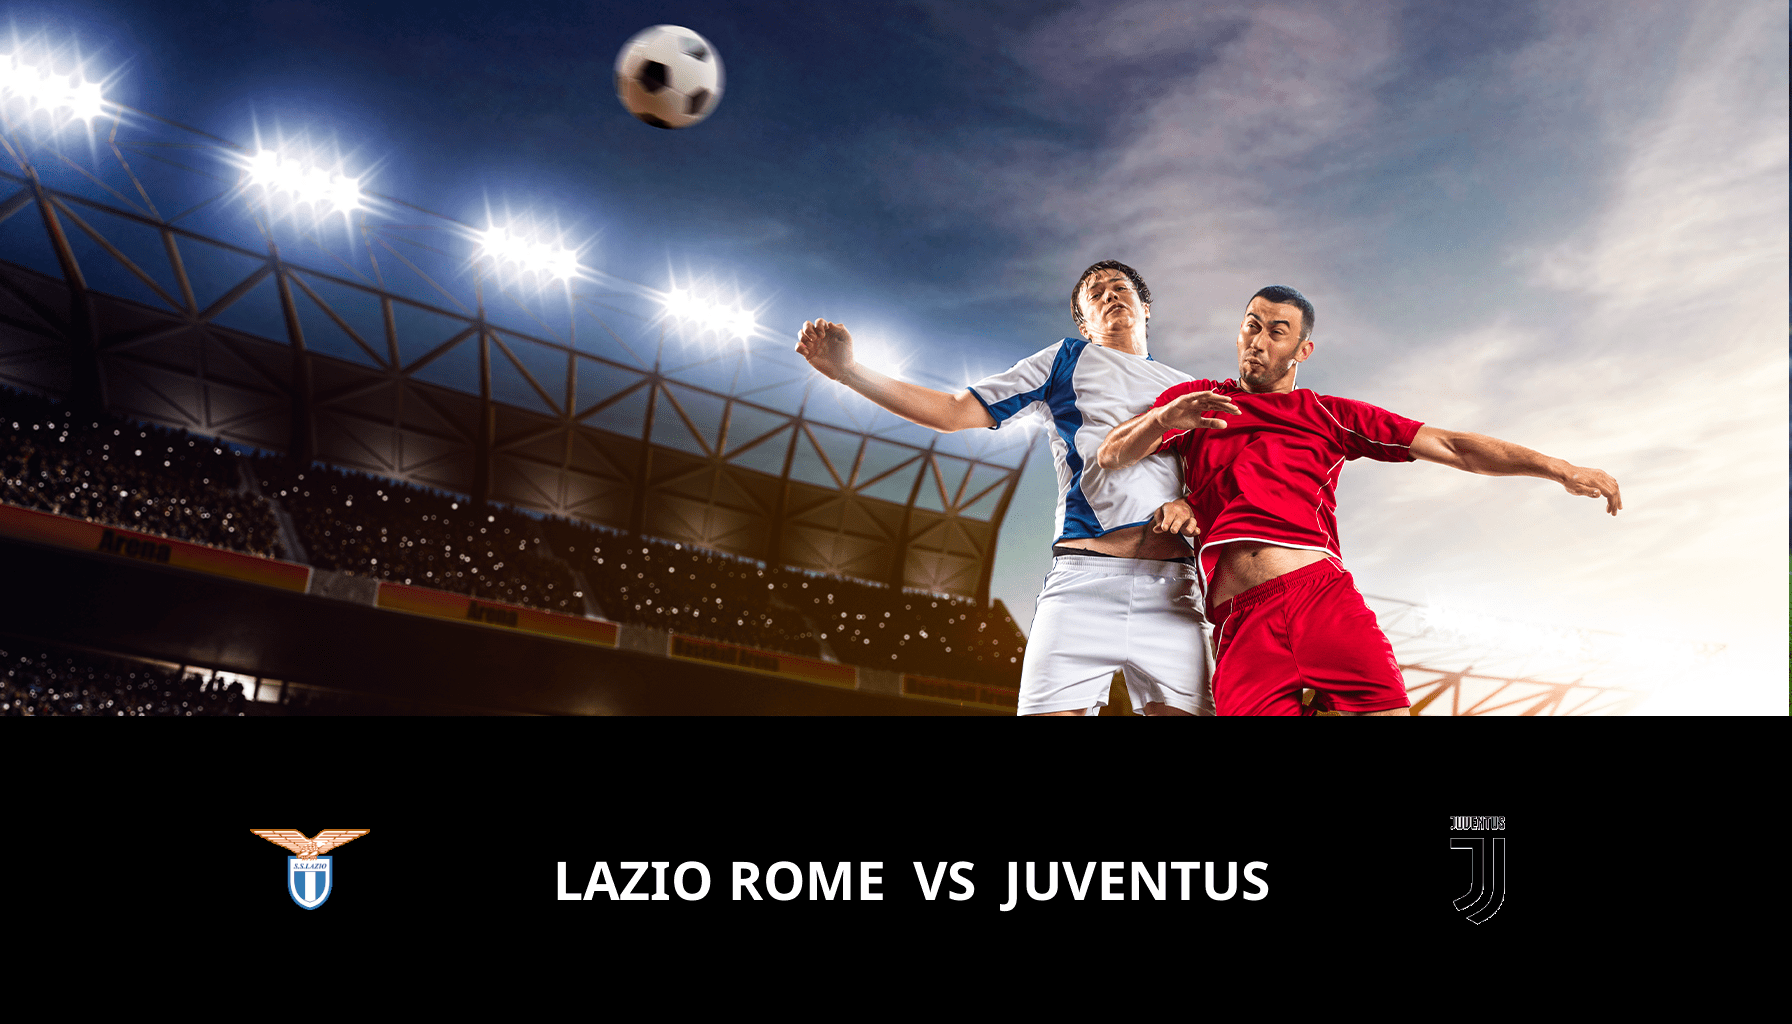 Previsione per Lazio Roma VS Juventus il 23/04/2024 Analysis of the match